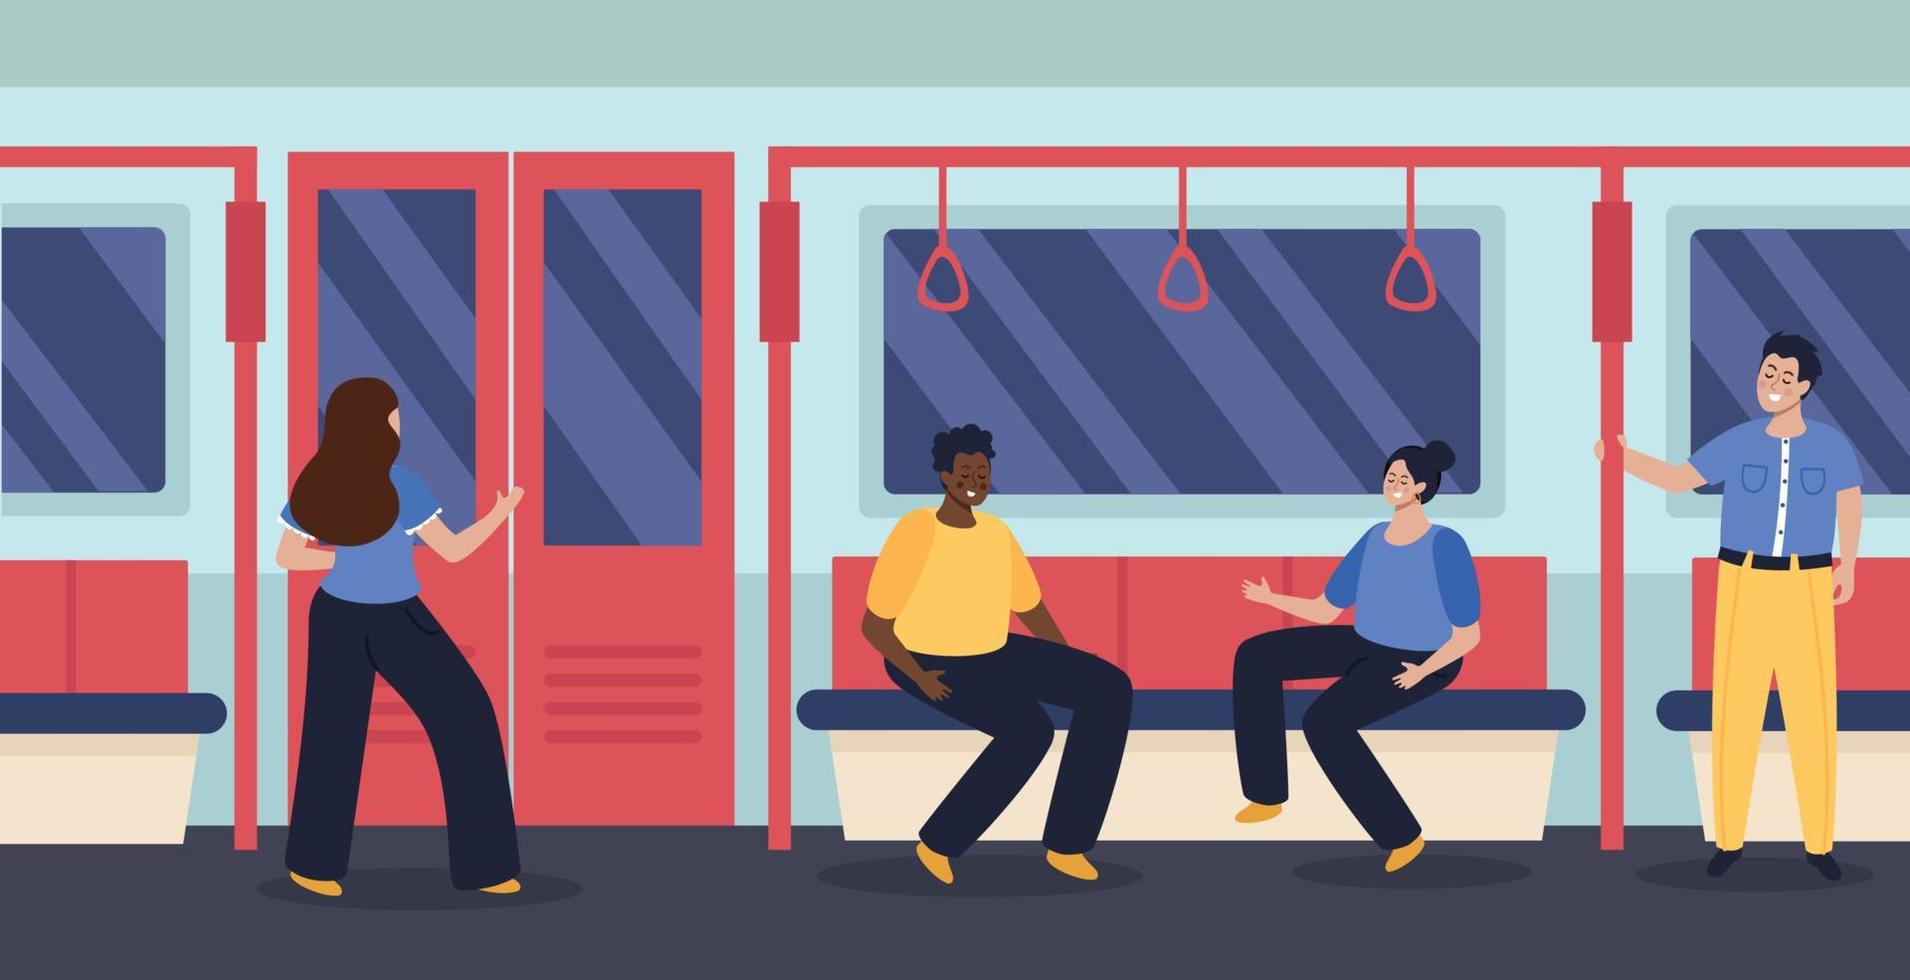 personnes dans le métro illustration plate vecteur